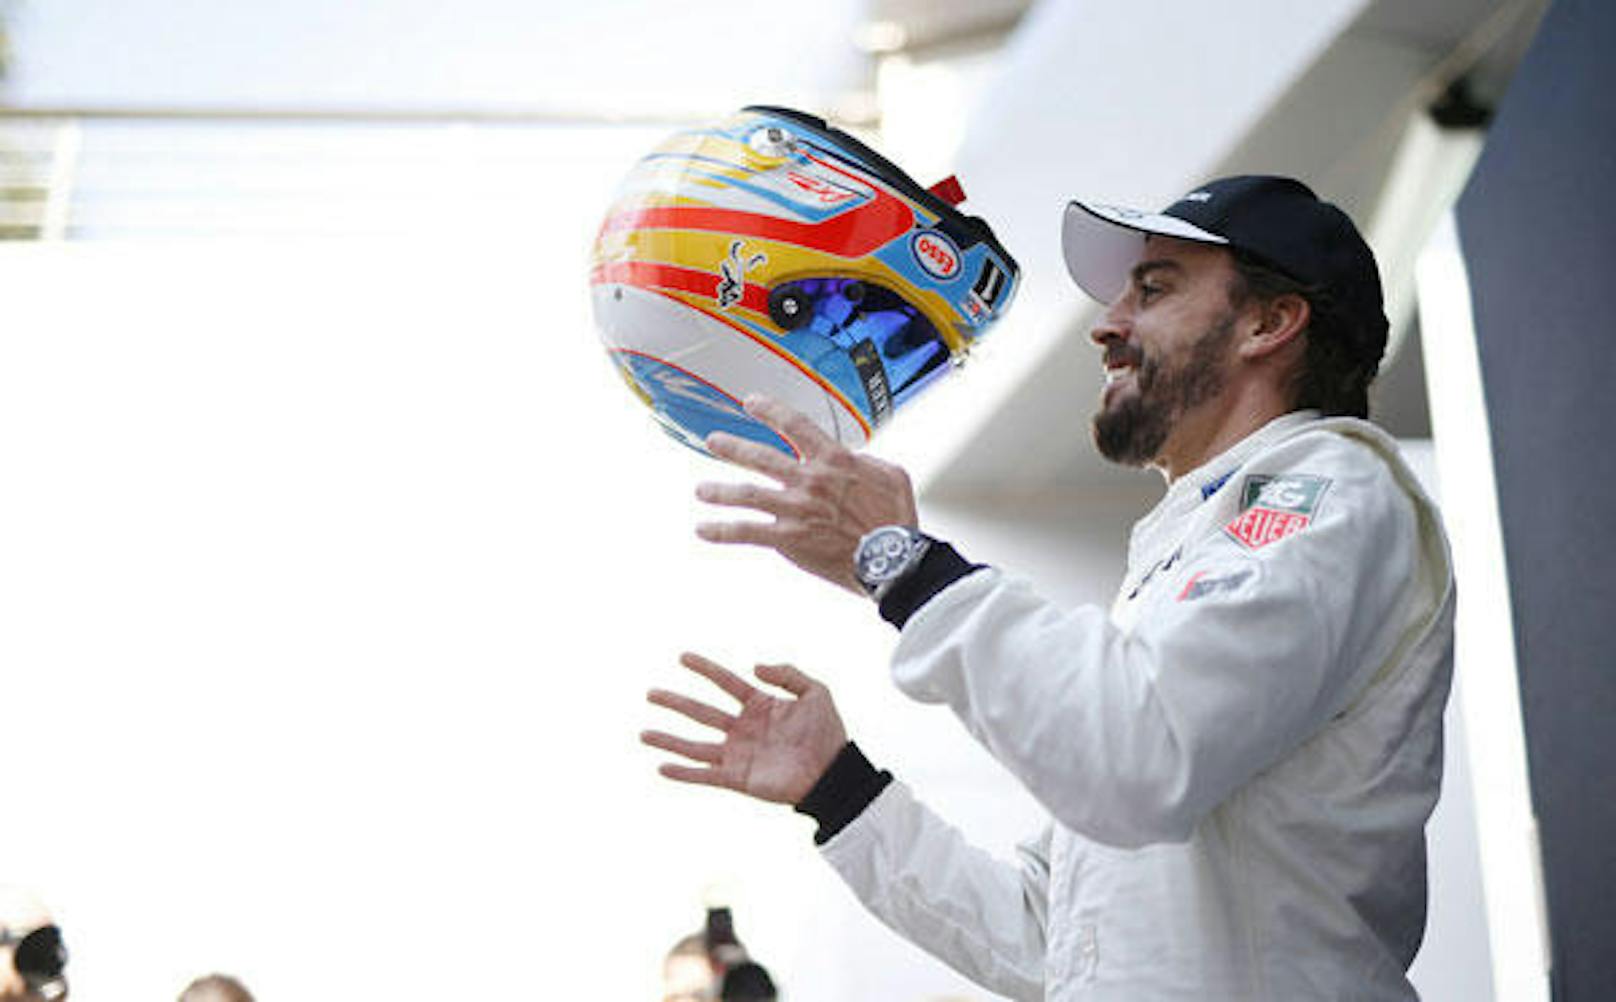 Ikone <b>Fernando Alonso </b>will es mit den Briten nochmals versuchen.